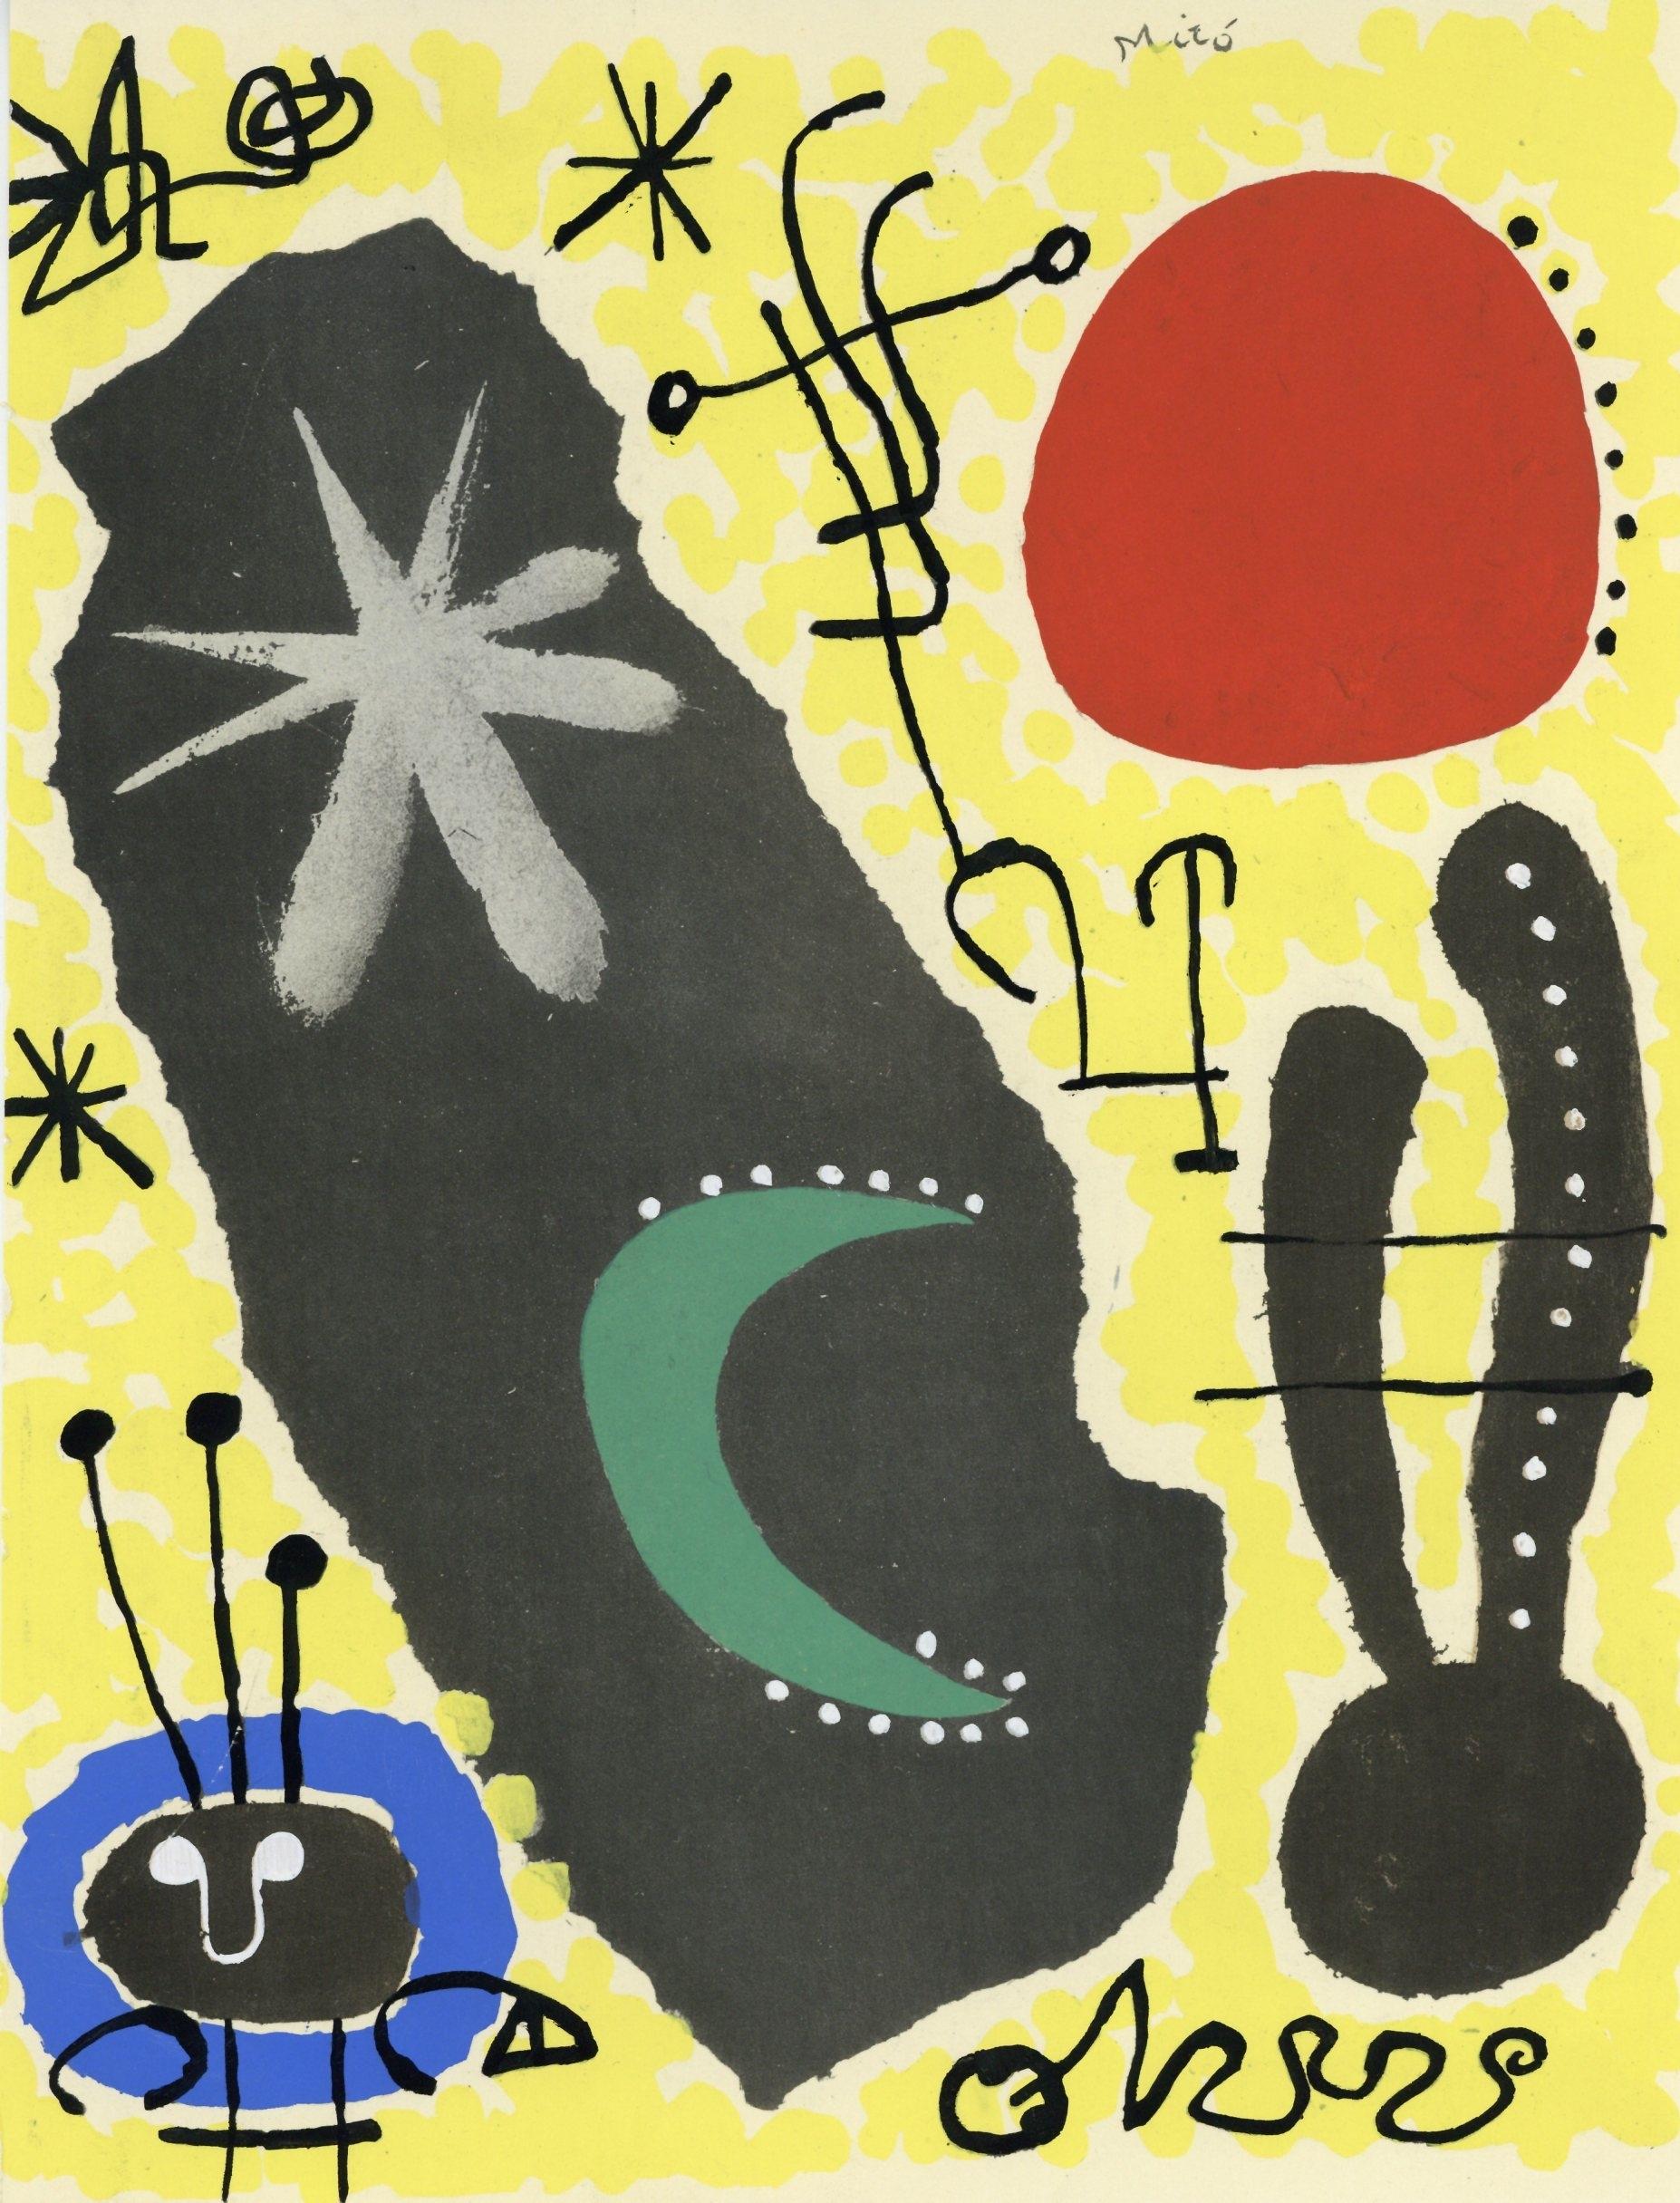 Joan Miró Figurative Print - Miró, Papier collé, XXe Siècle (after)